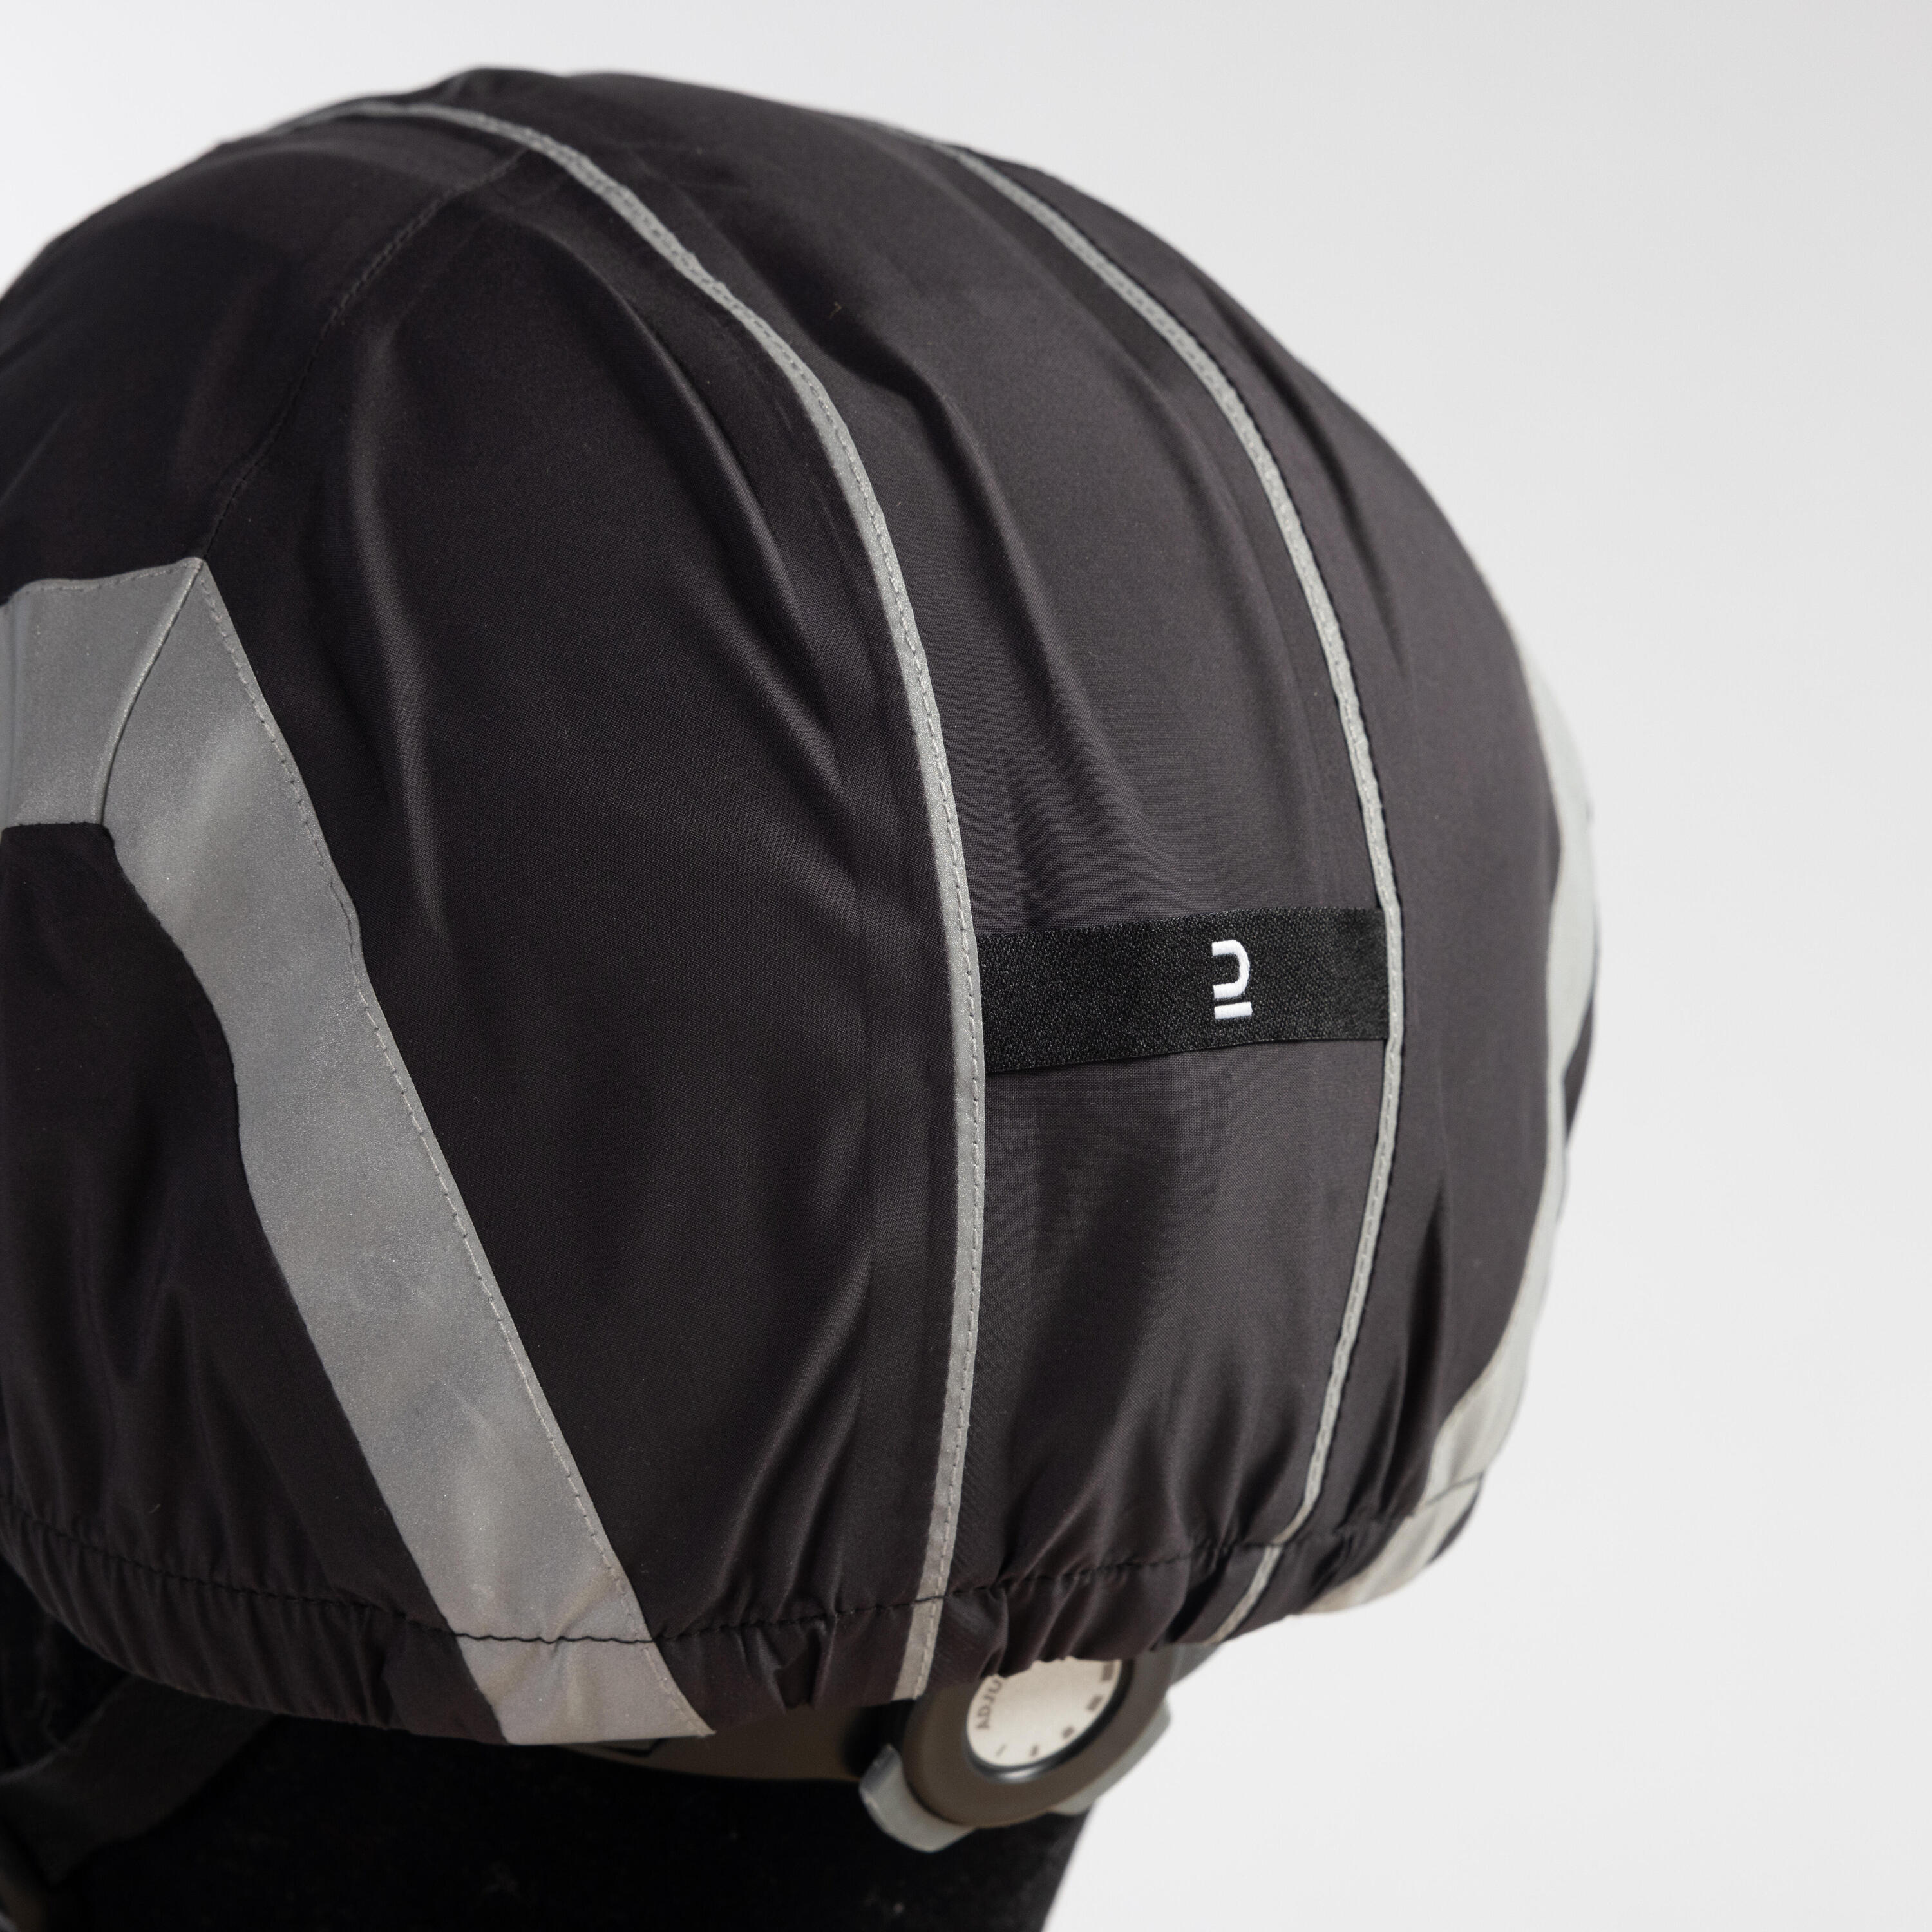 Night Visibility Waterproof Helmet Cover 940 - Black 5/6